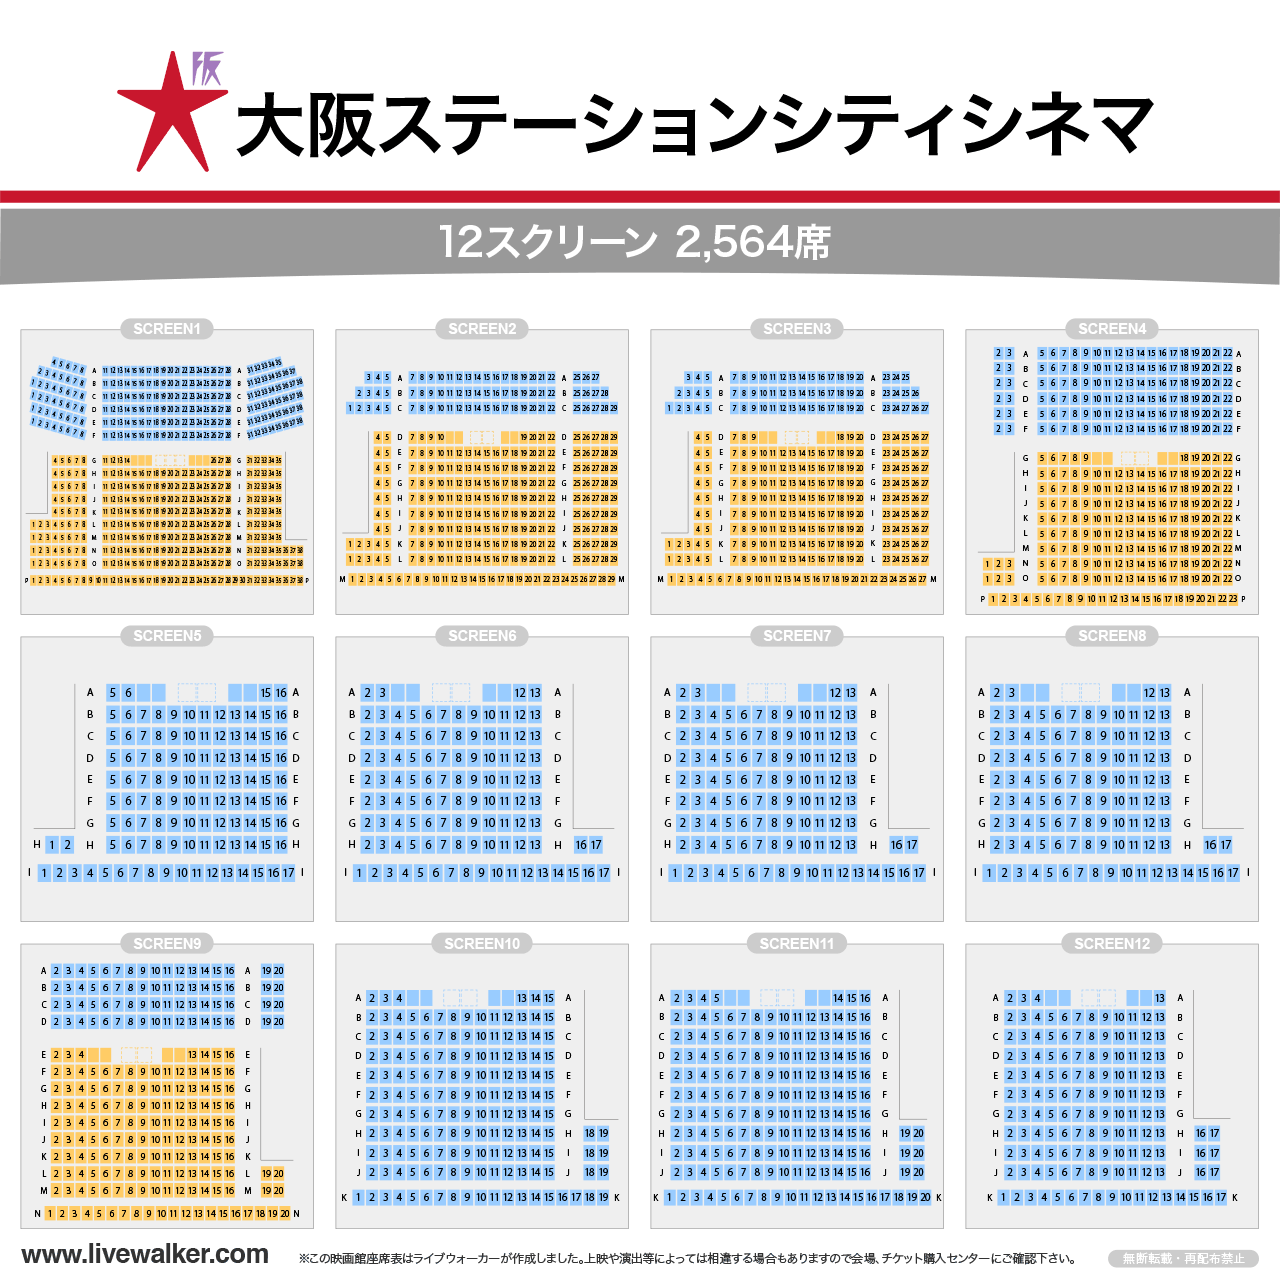 大阪ステーションシティシネマスクリーンの座席表